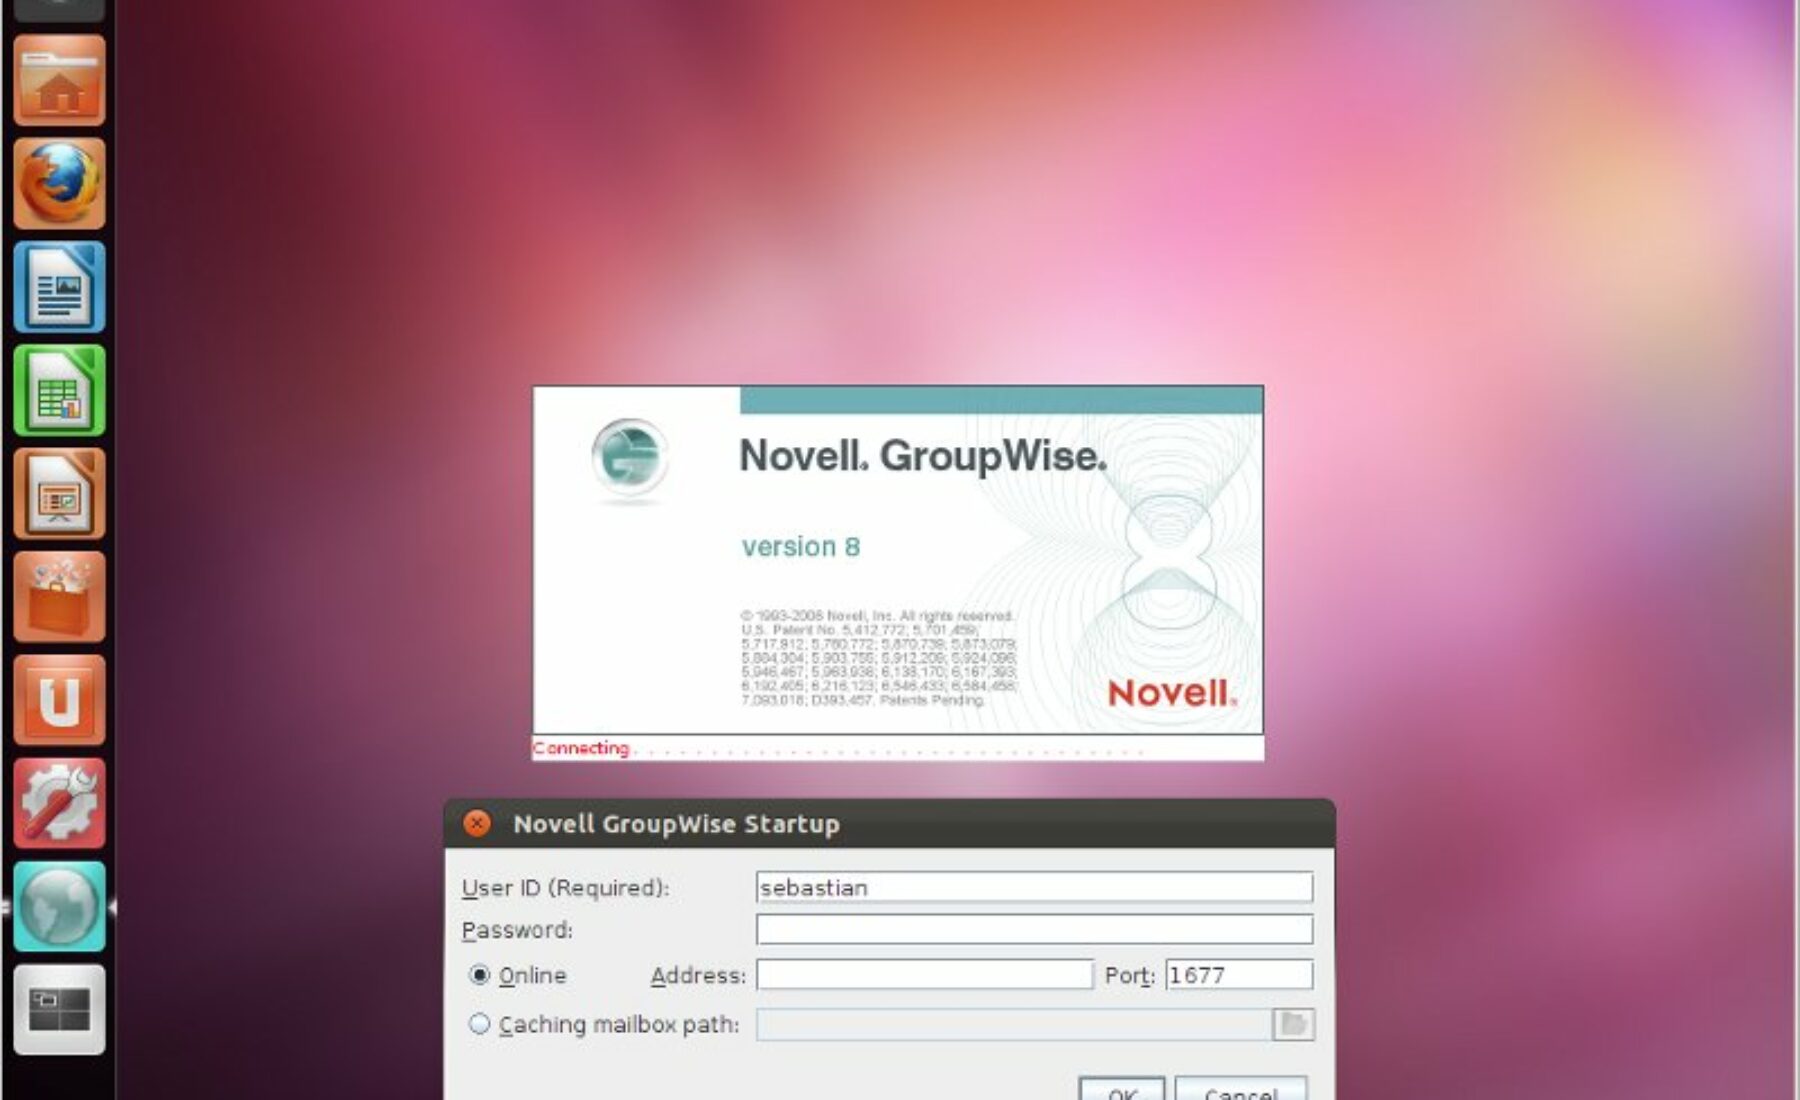 Novell Groupwise 8 Ubuntu 11.10 Oneiric Ocelot or 12.04 Precise Pangolin 64-Bit